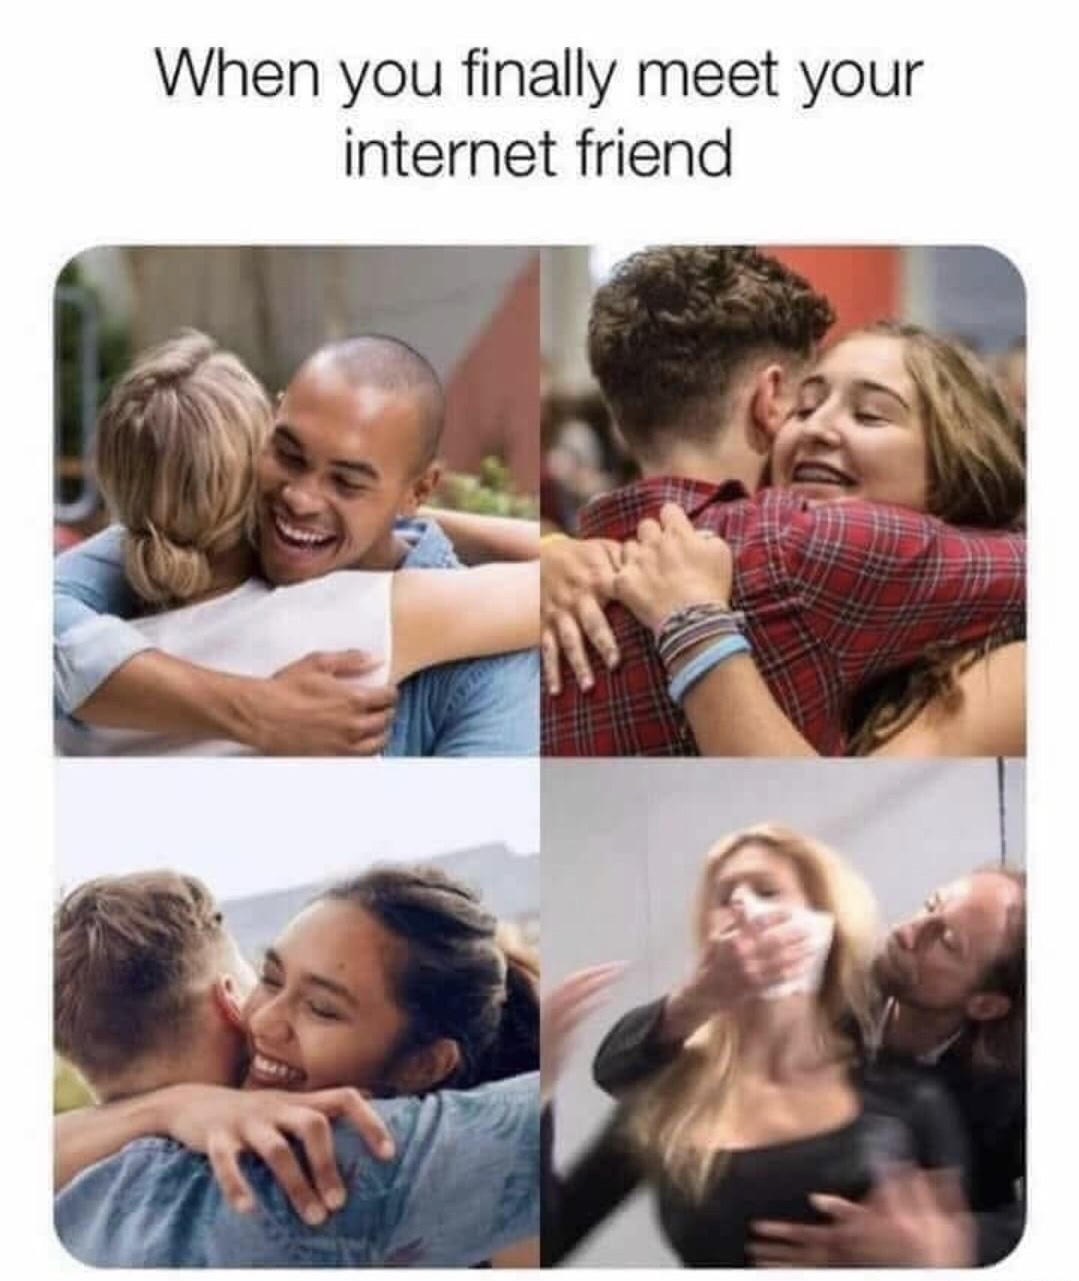 meme - you meet your internet friend meme - When you finally meet your internet friend